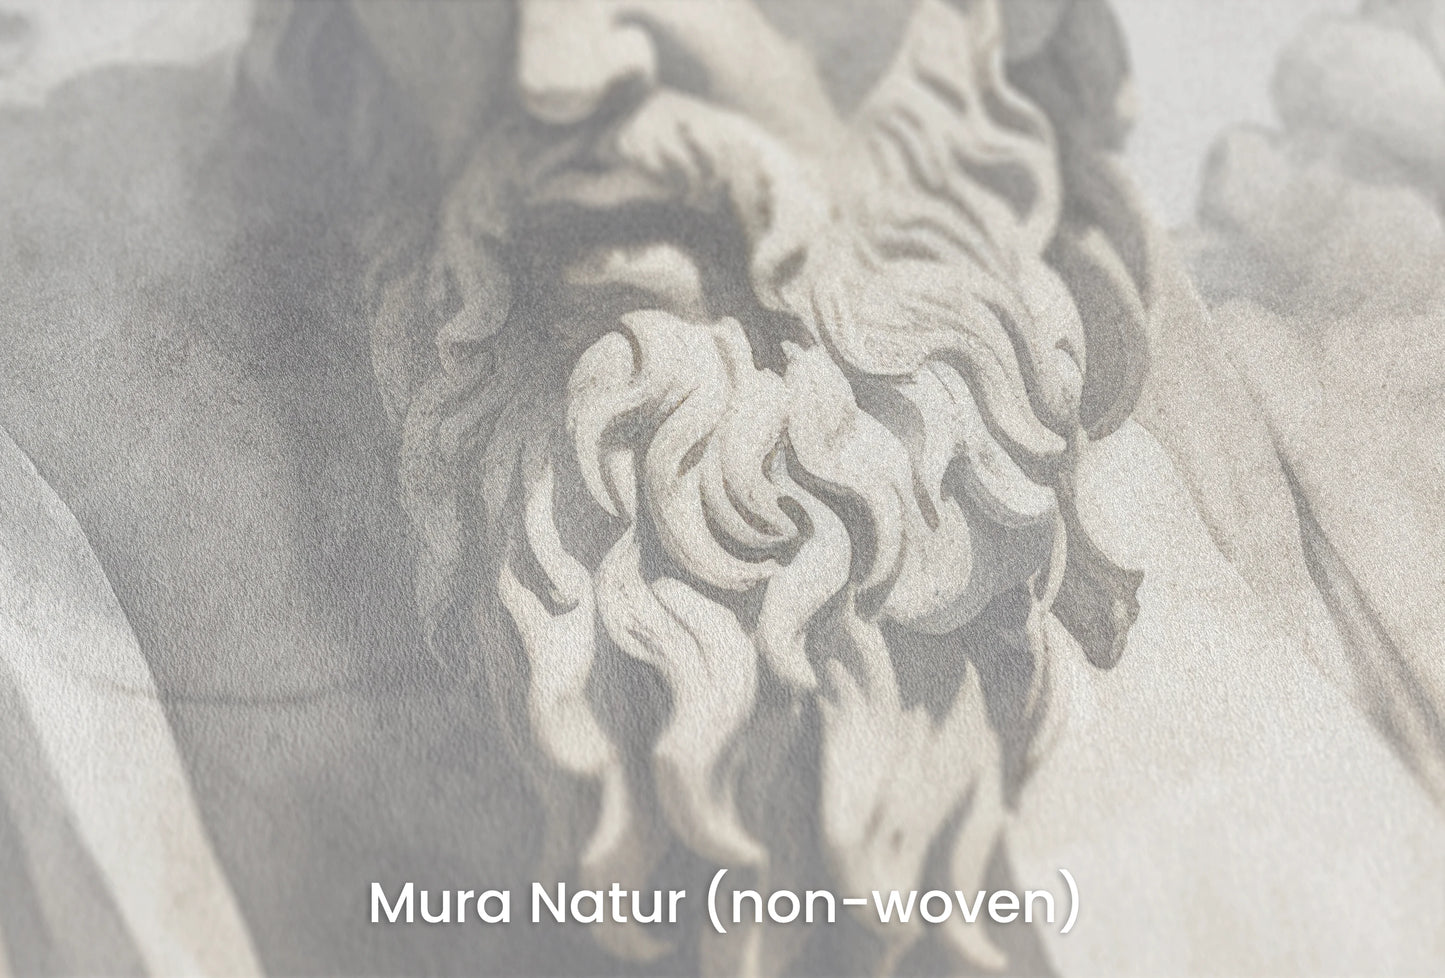 Zbliżenie na artystyczną fototapetę o nazwie Zeus's Contemplation na podłożu Mura Natur (non-woven) - naturalne i ekologiczne podłoże.